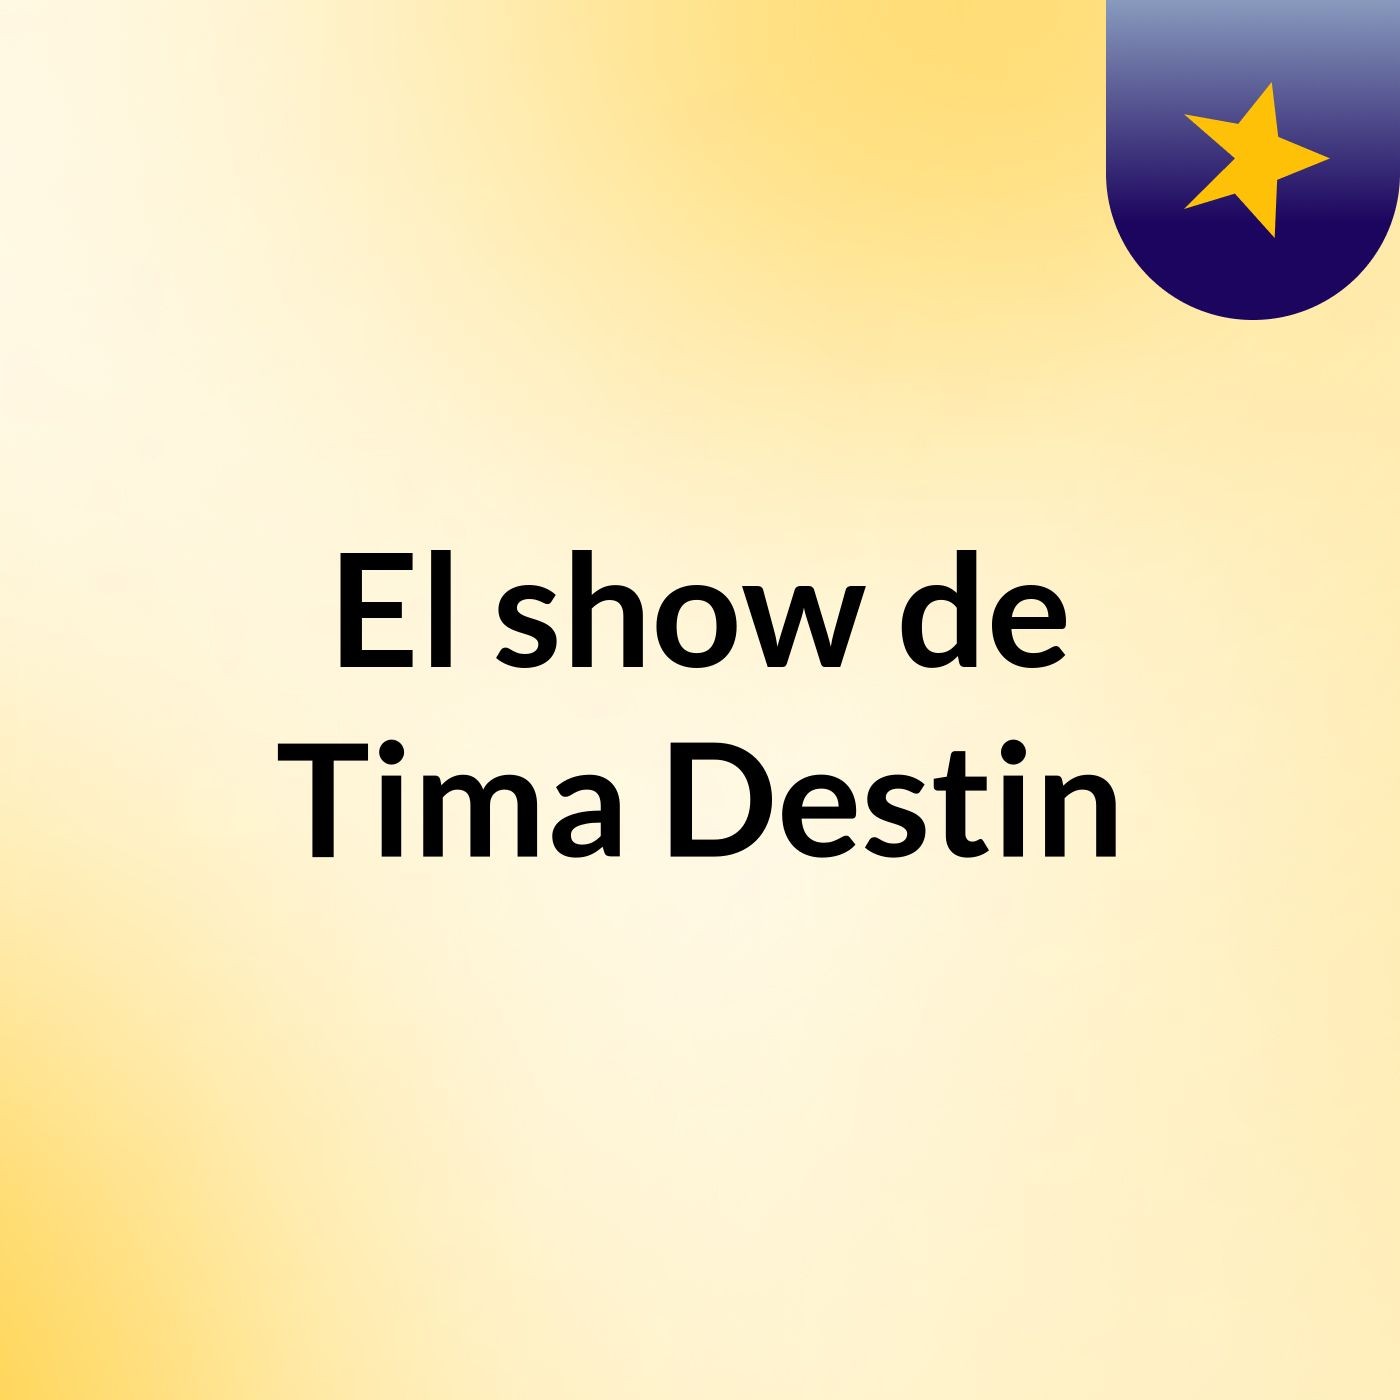 El show de Tima Destin